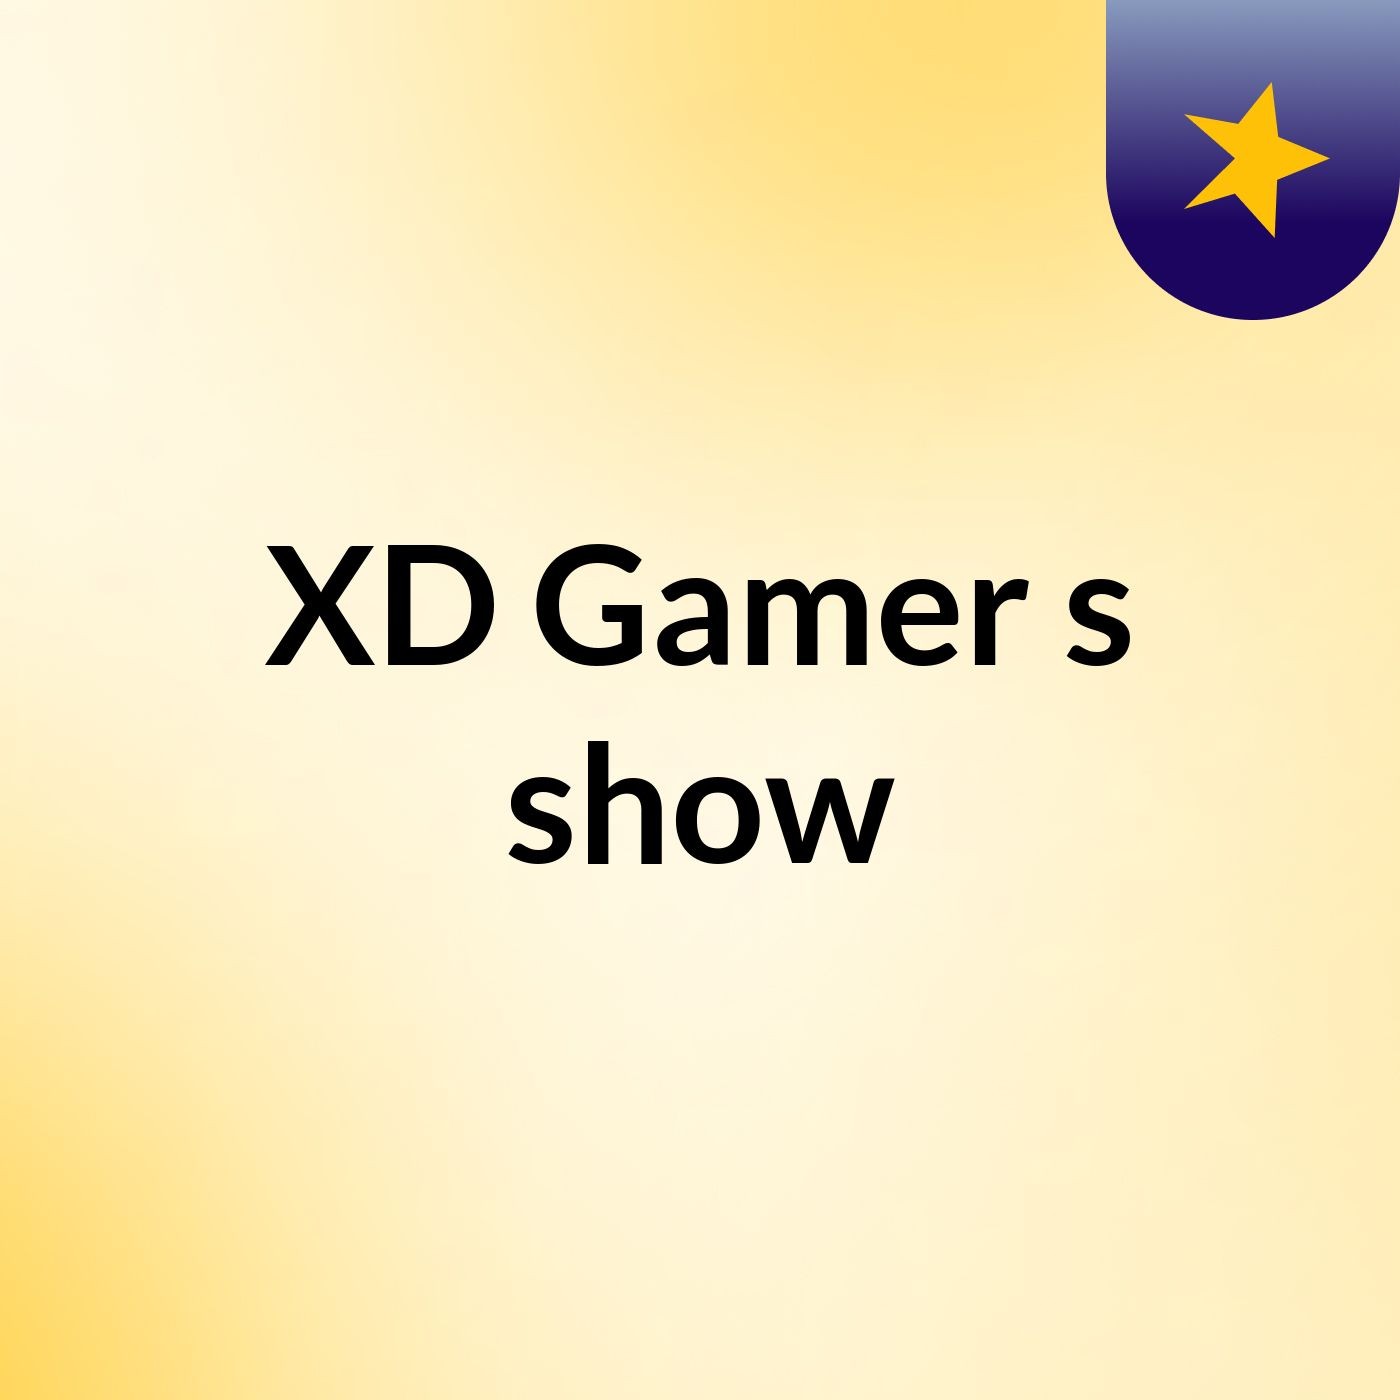 XD Gamer's show